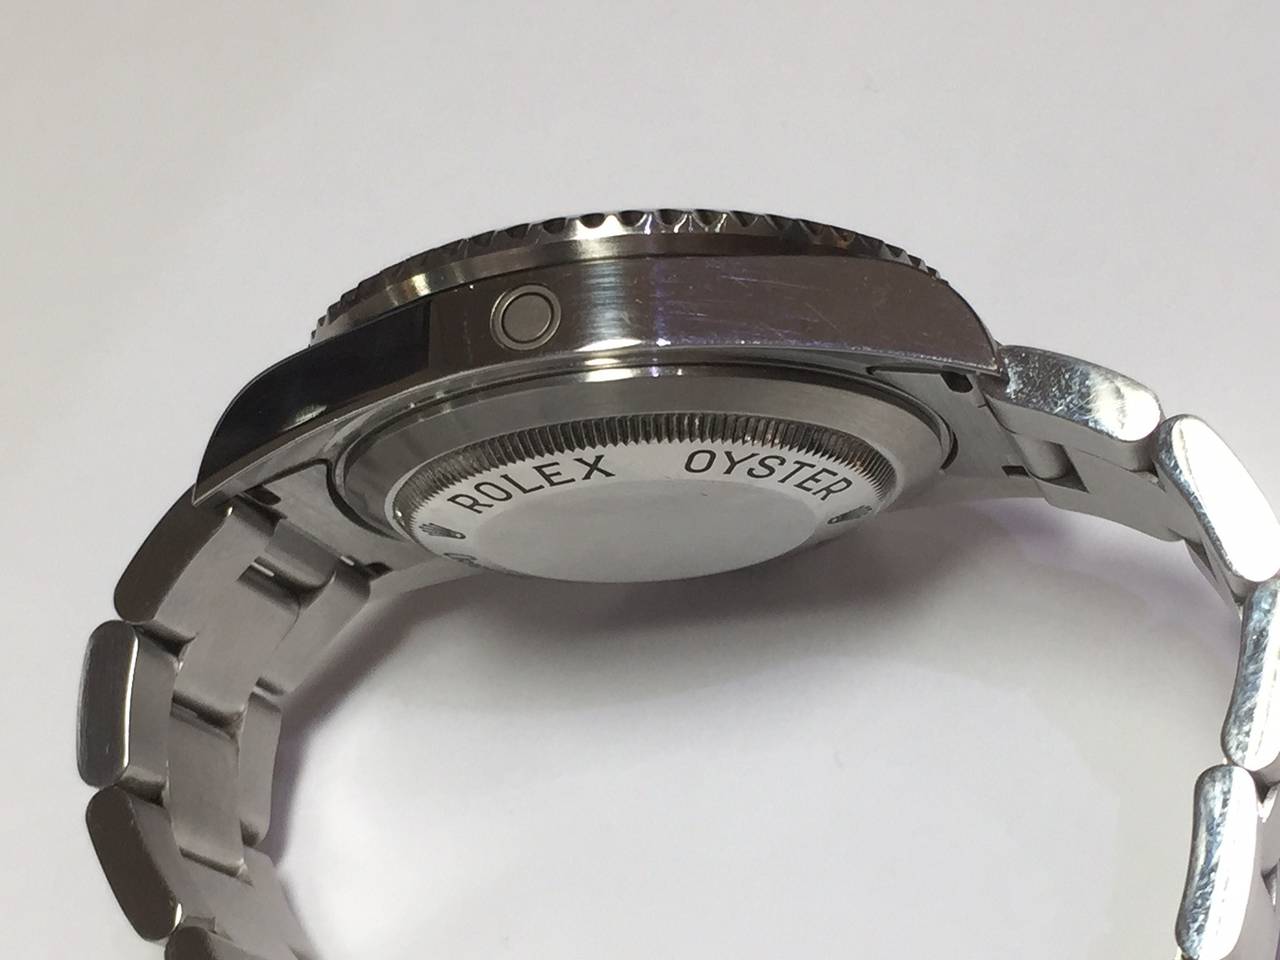 Rolex Stainless Steel Sea-Dweller Chronometer Wristwatch Ref 16600 1